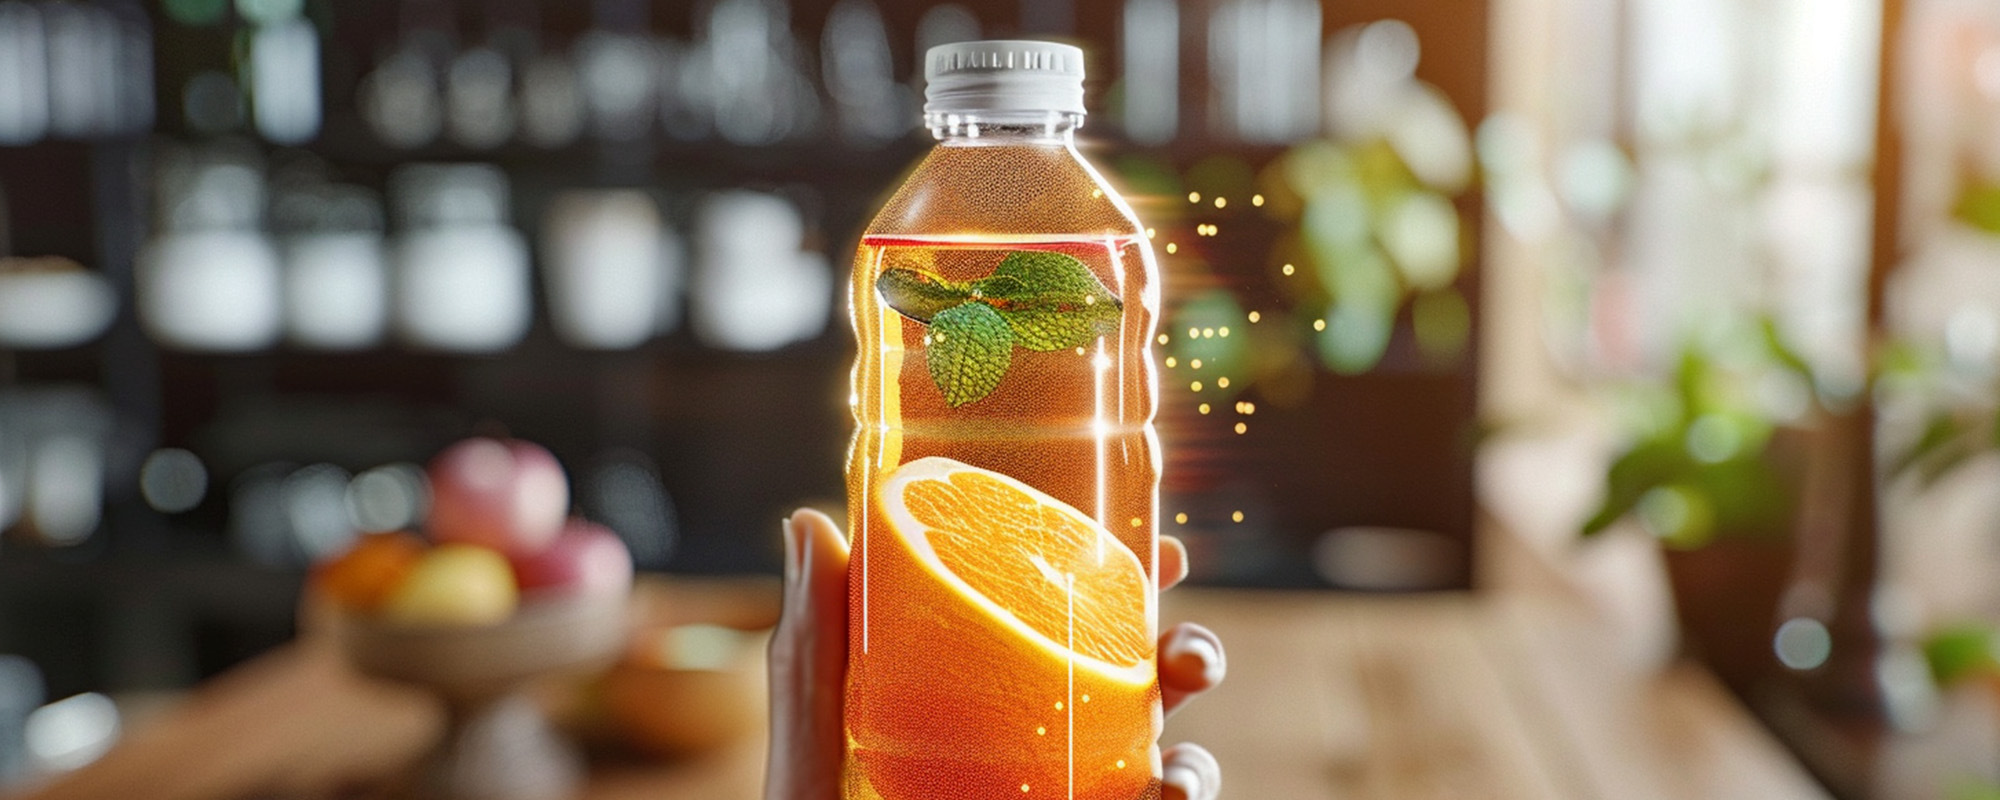 Una mano sostiene una botella de plástico transparente con tapa blanca, llena de una bebida color naranja con rodajas de naranja y hojas de menta flotando en su interior que parecen generadas por realidad aumentada. El entorno es una cocina acogedora. Así imagina la IA el packaging del futuro.